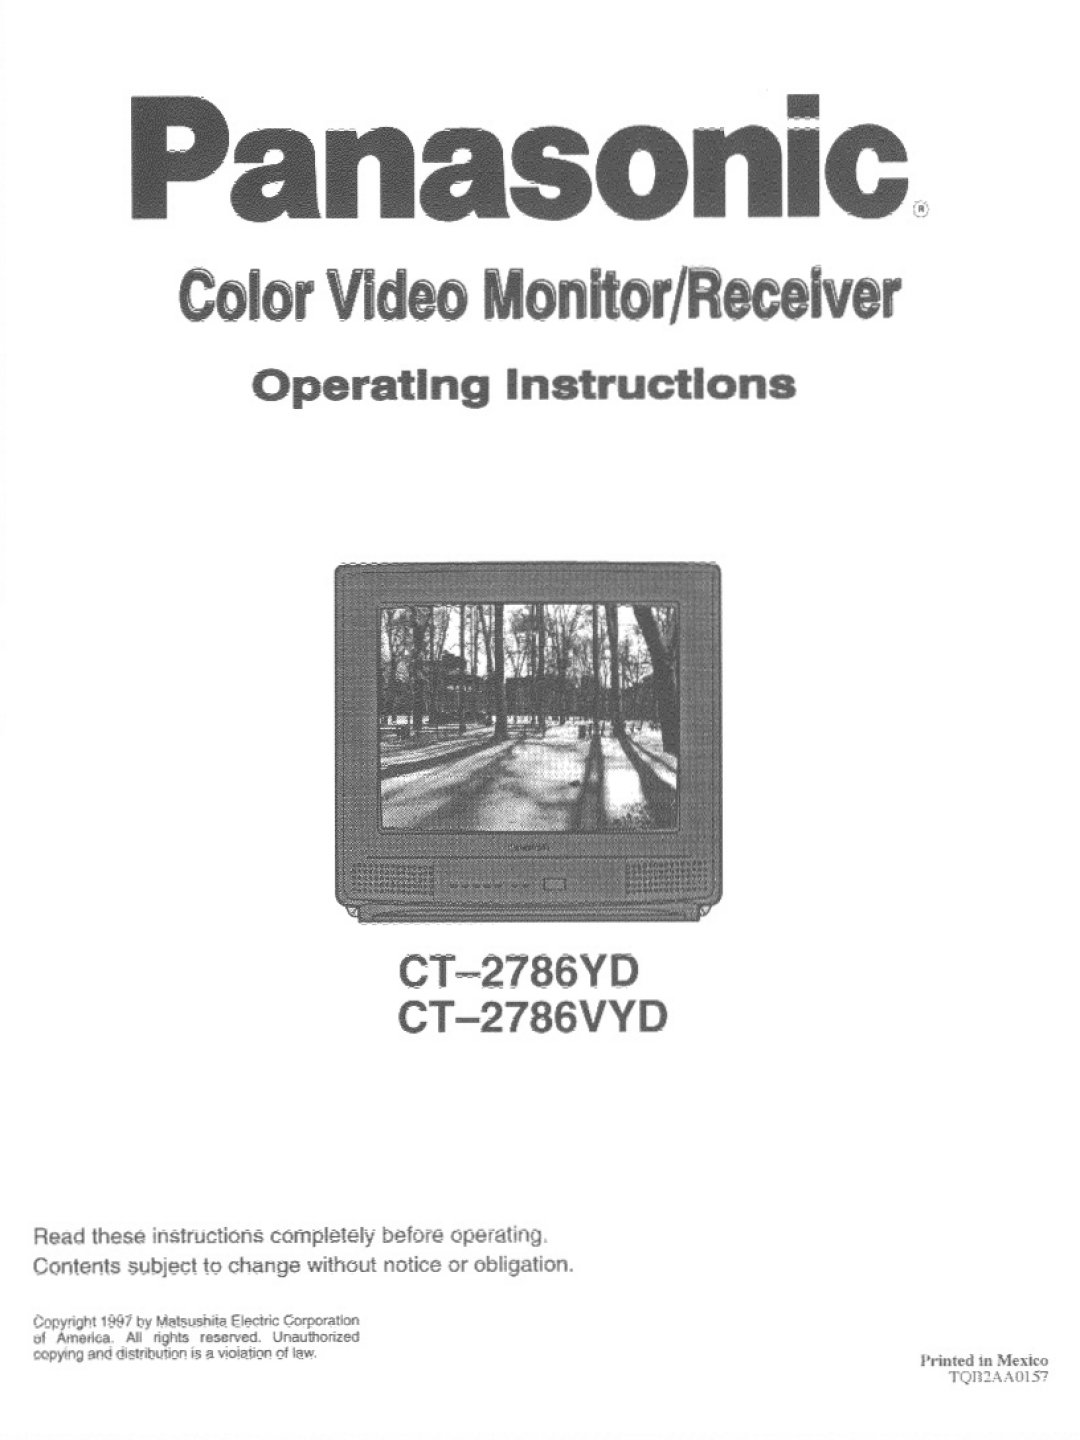 Panasonic CT-2786VYD, CT-2786YD manual 